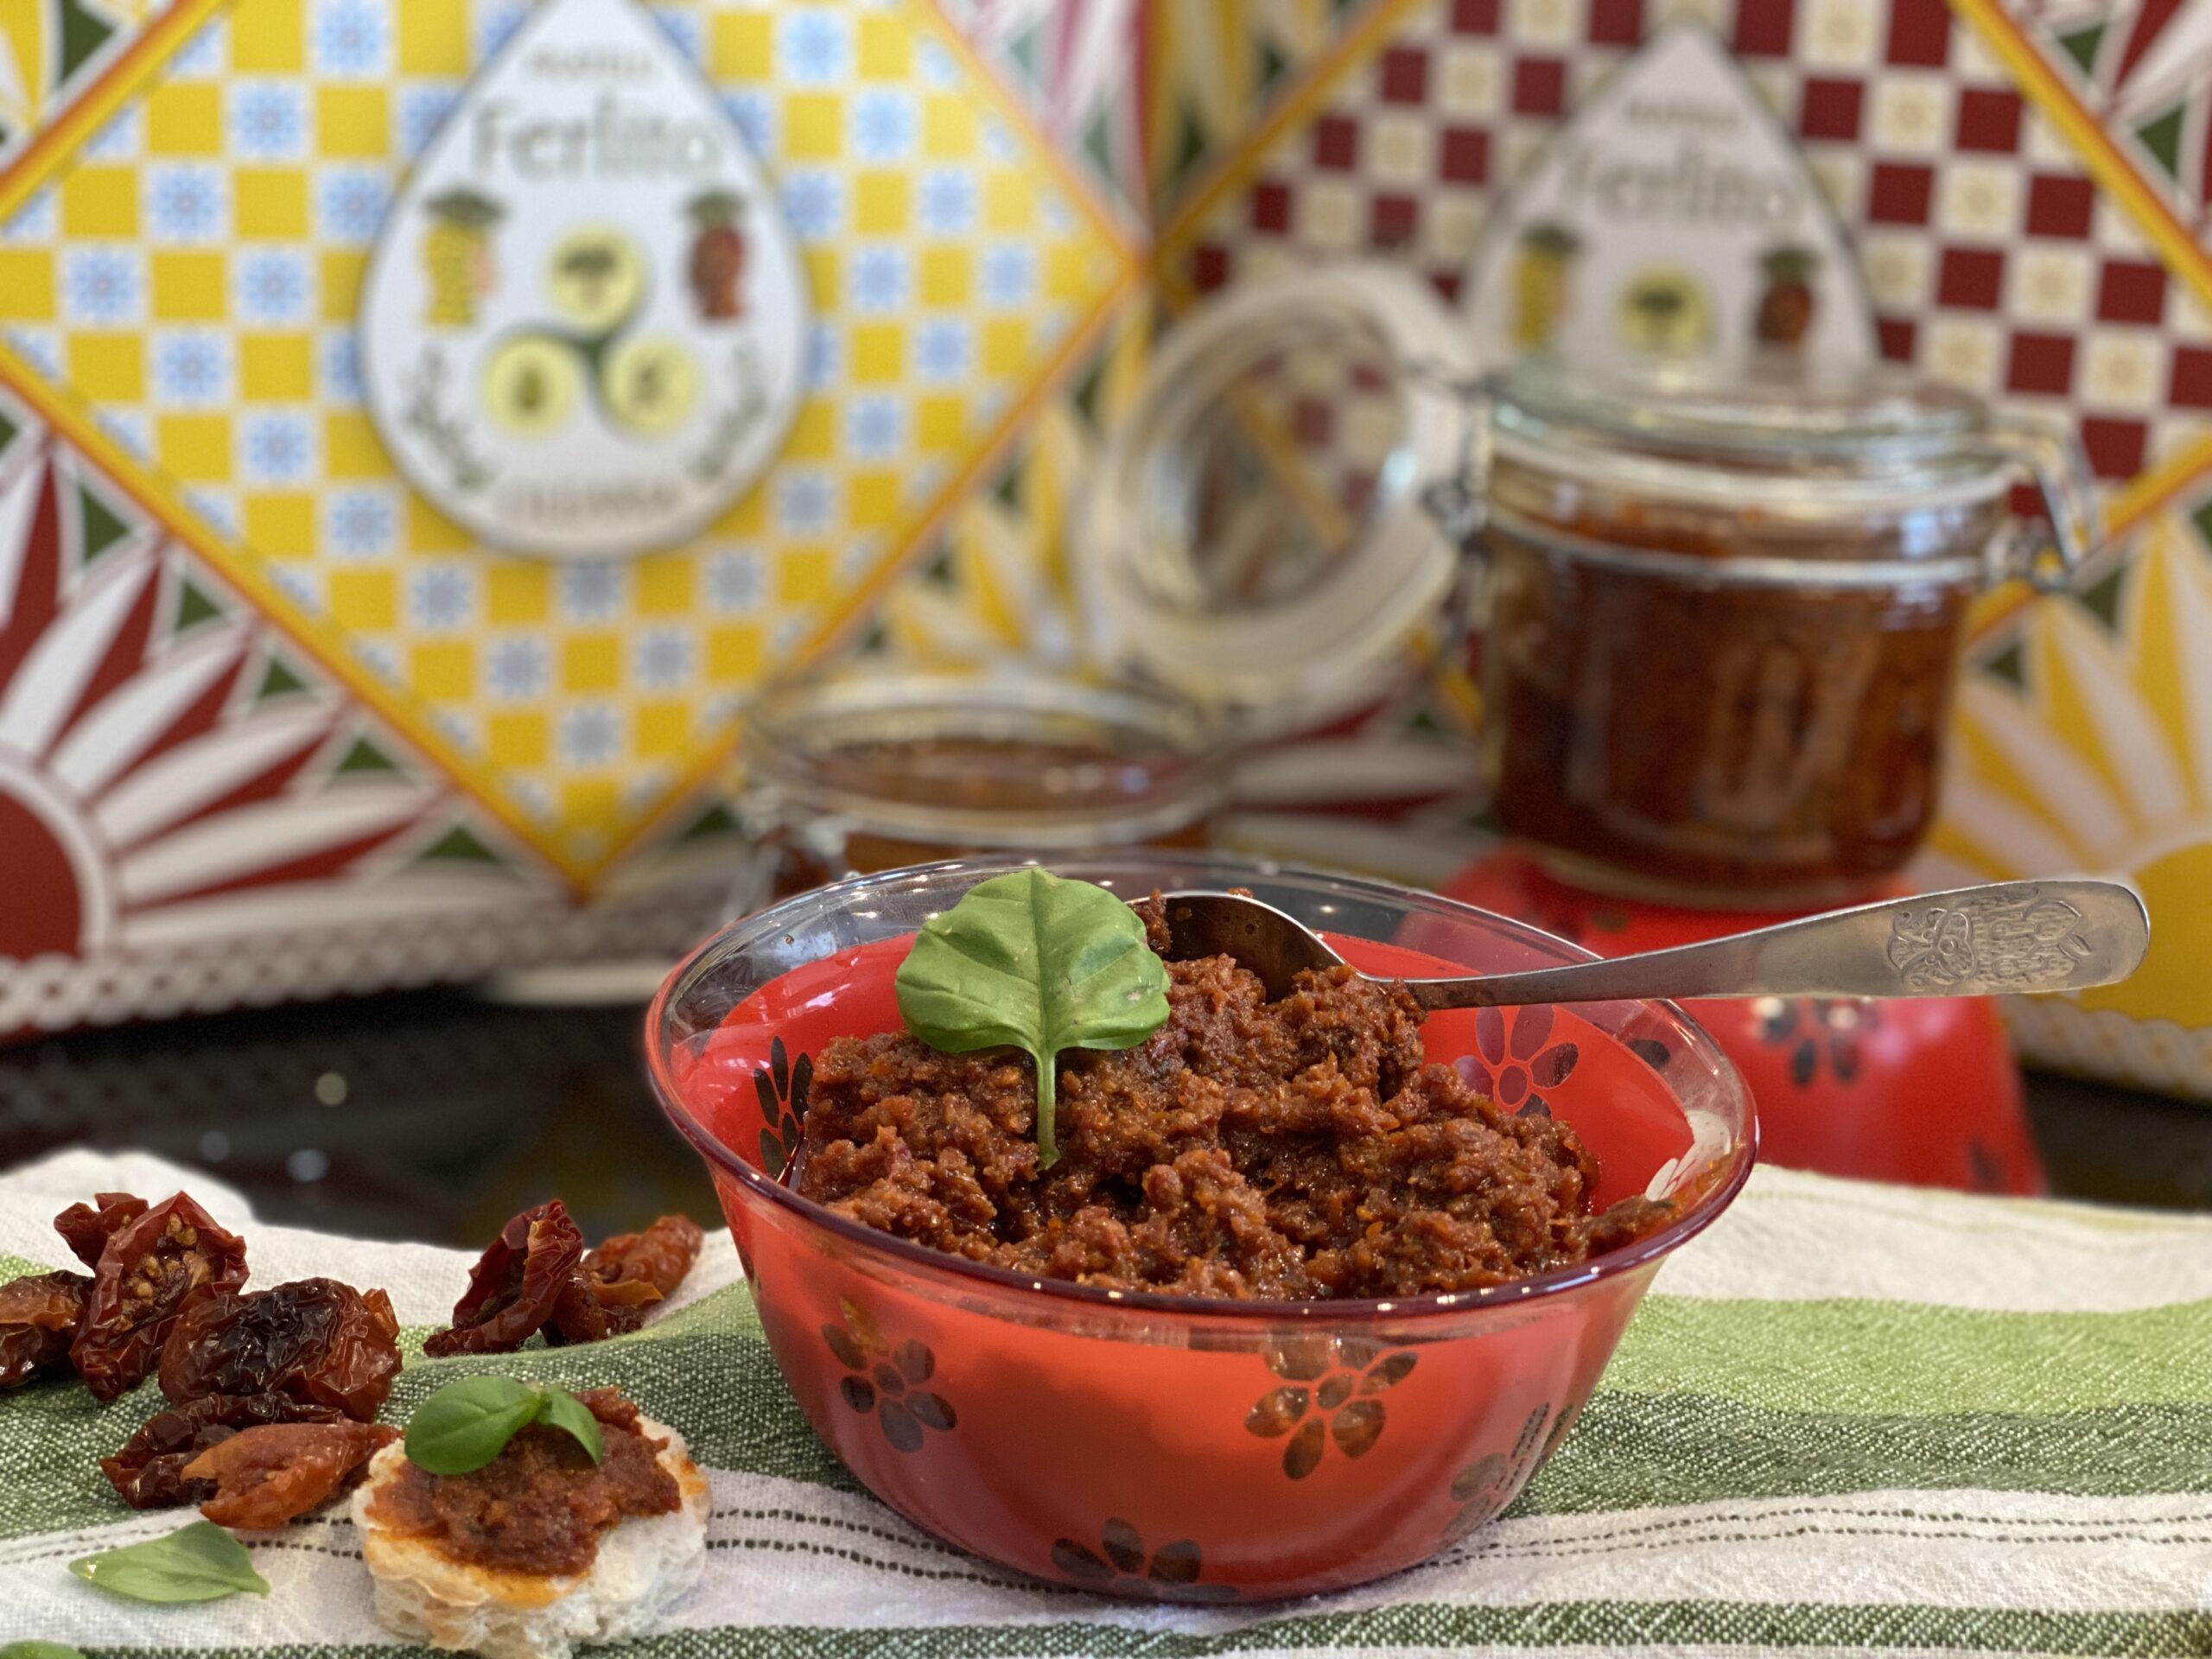 Pesto di Pomodori secchi alla Siciliana - La cucina del cuore